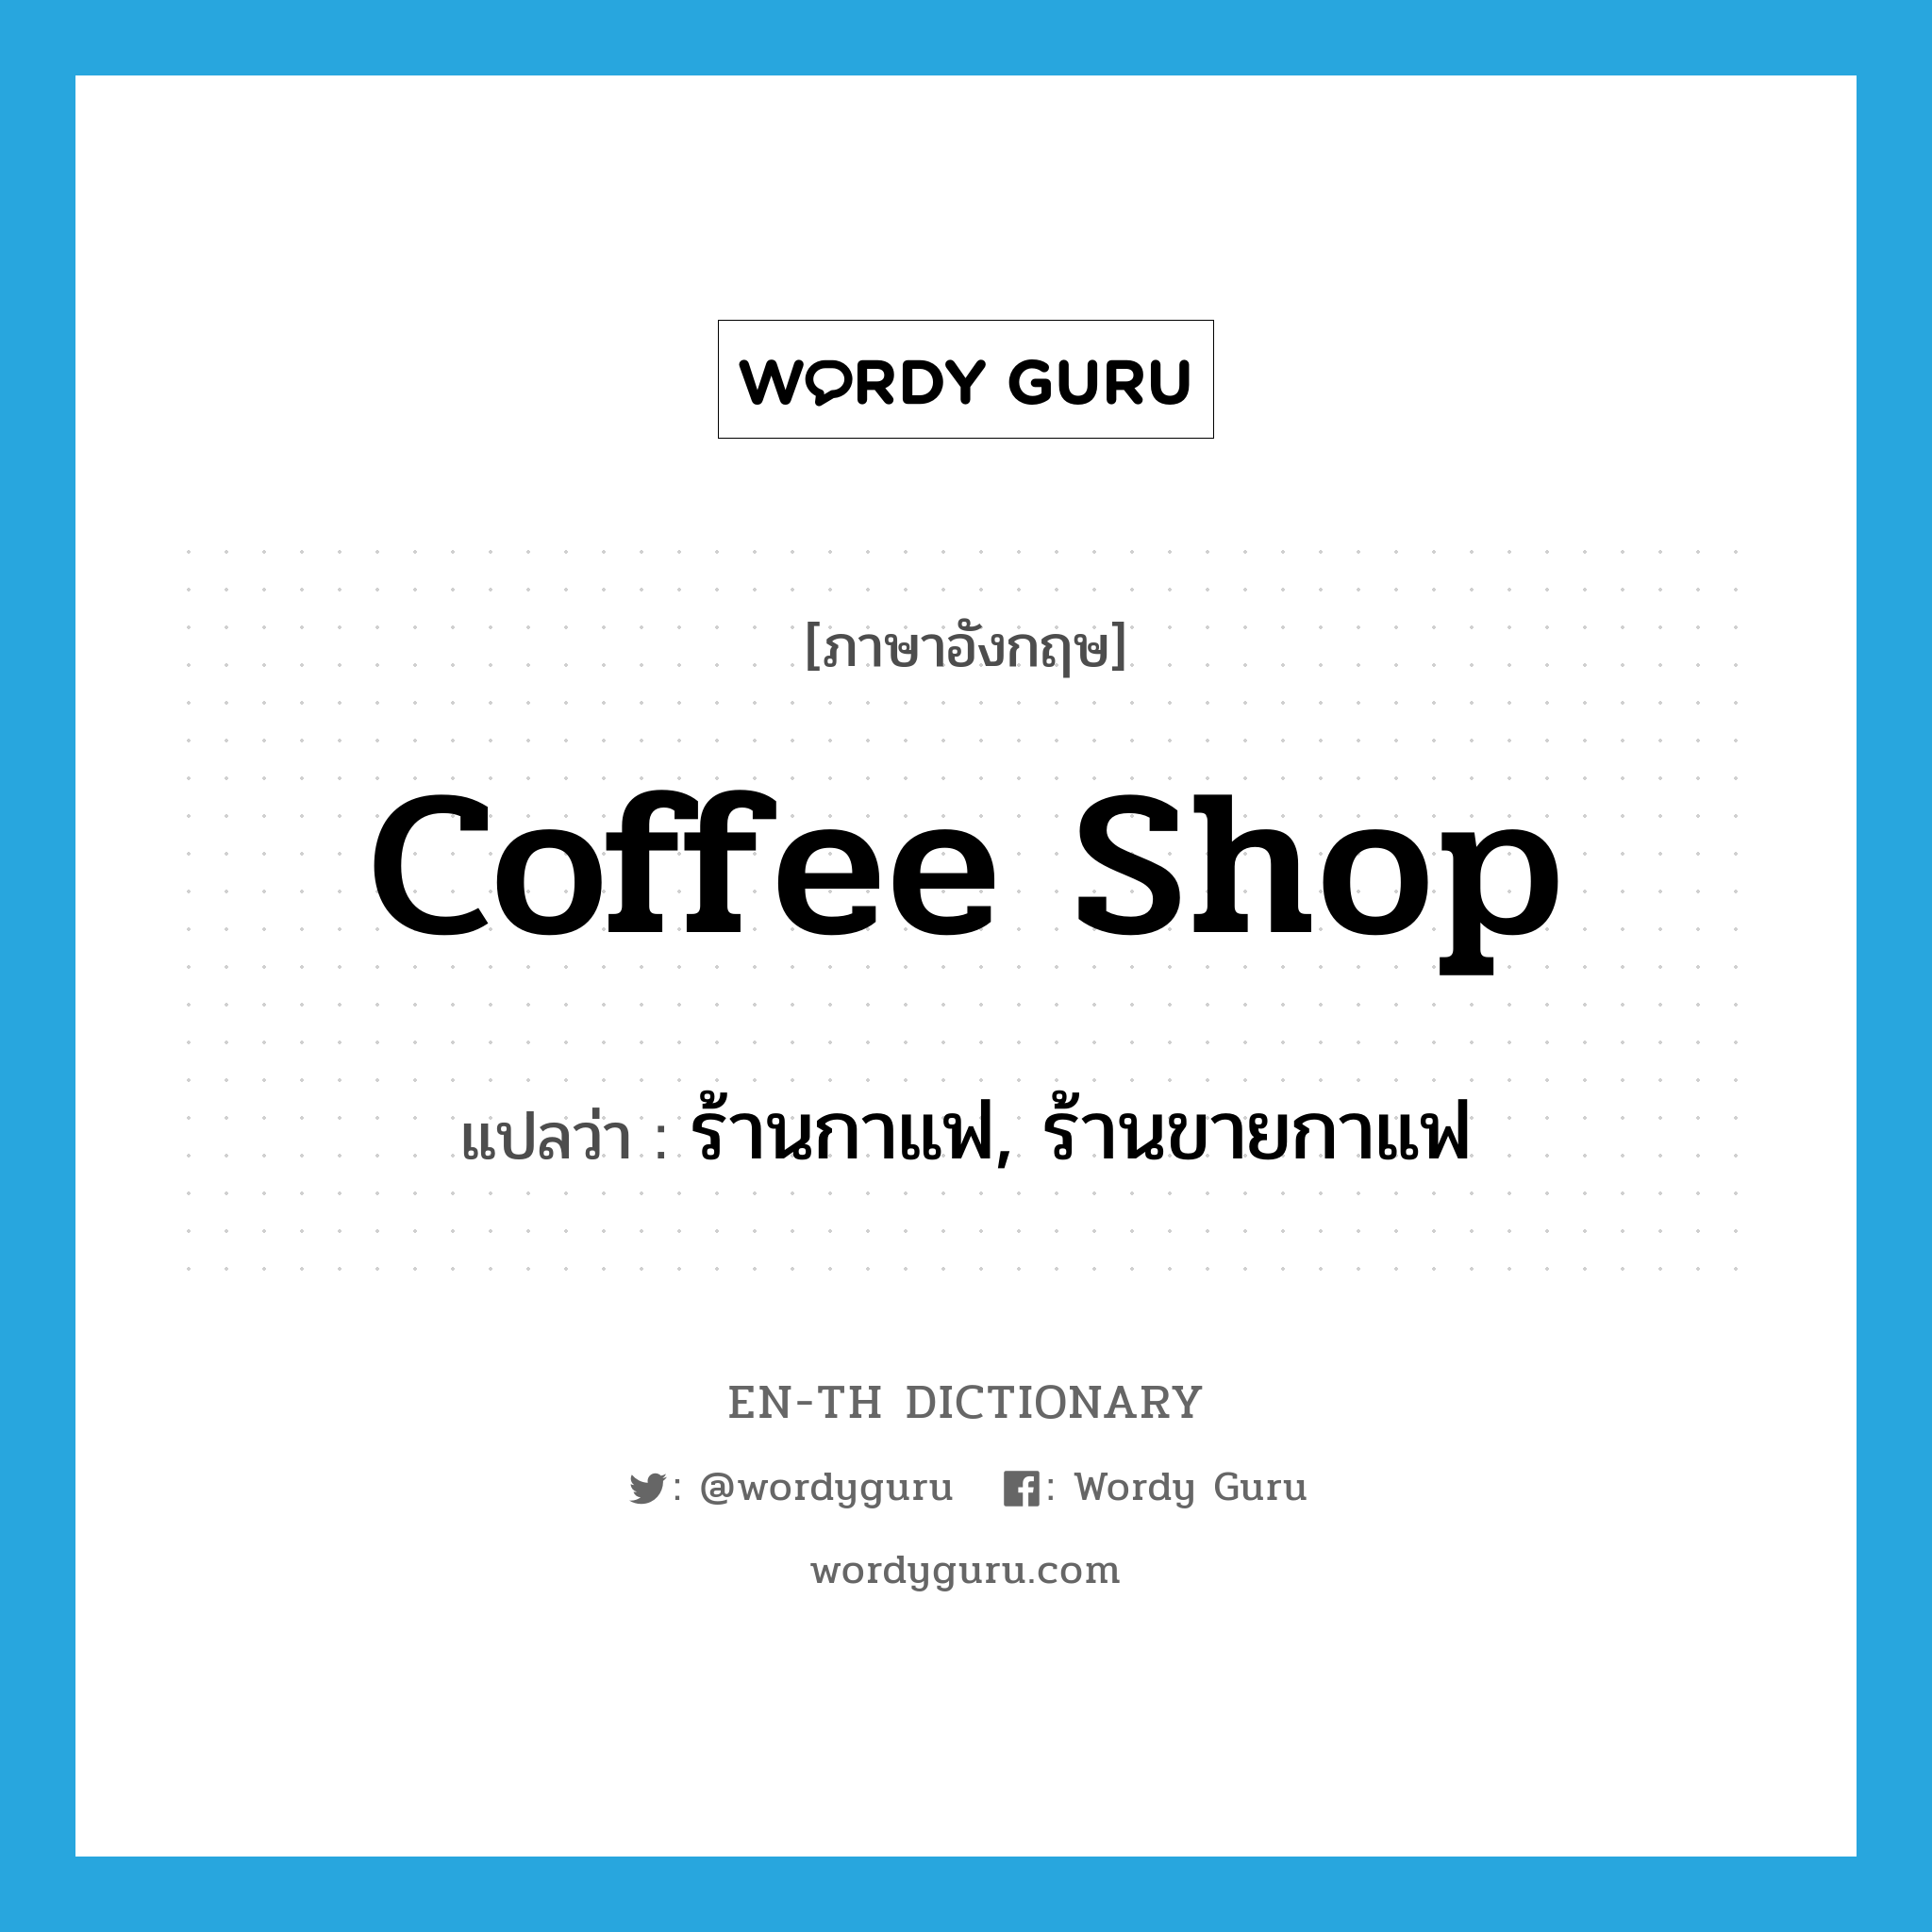 ร้านกาแฟ, ร้านขายกาแฟ ภาษาอังกฤษ?, คำศัพท์ภาษาอังกฤษ ร้านกาแฟ, ร้านขายกาแฟ แปลว่า coffee shop ประเภท N หมวด N